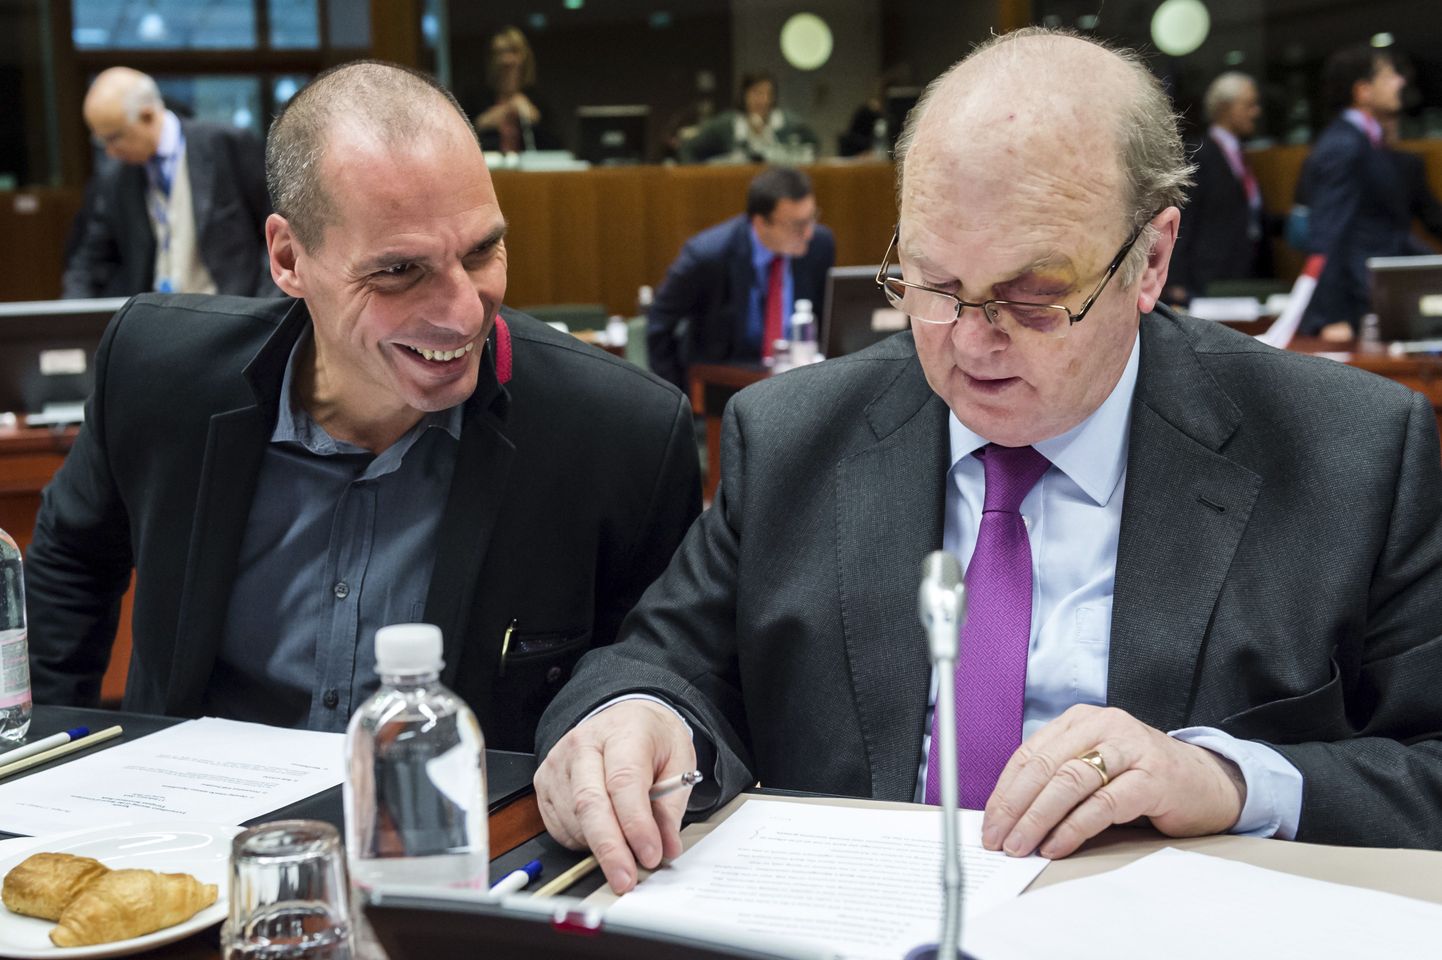 Kreeka rahandusminister Yanis Varoufakis (vasakul) Iiri kolleegi Michael Noonaniga.